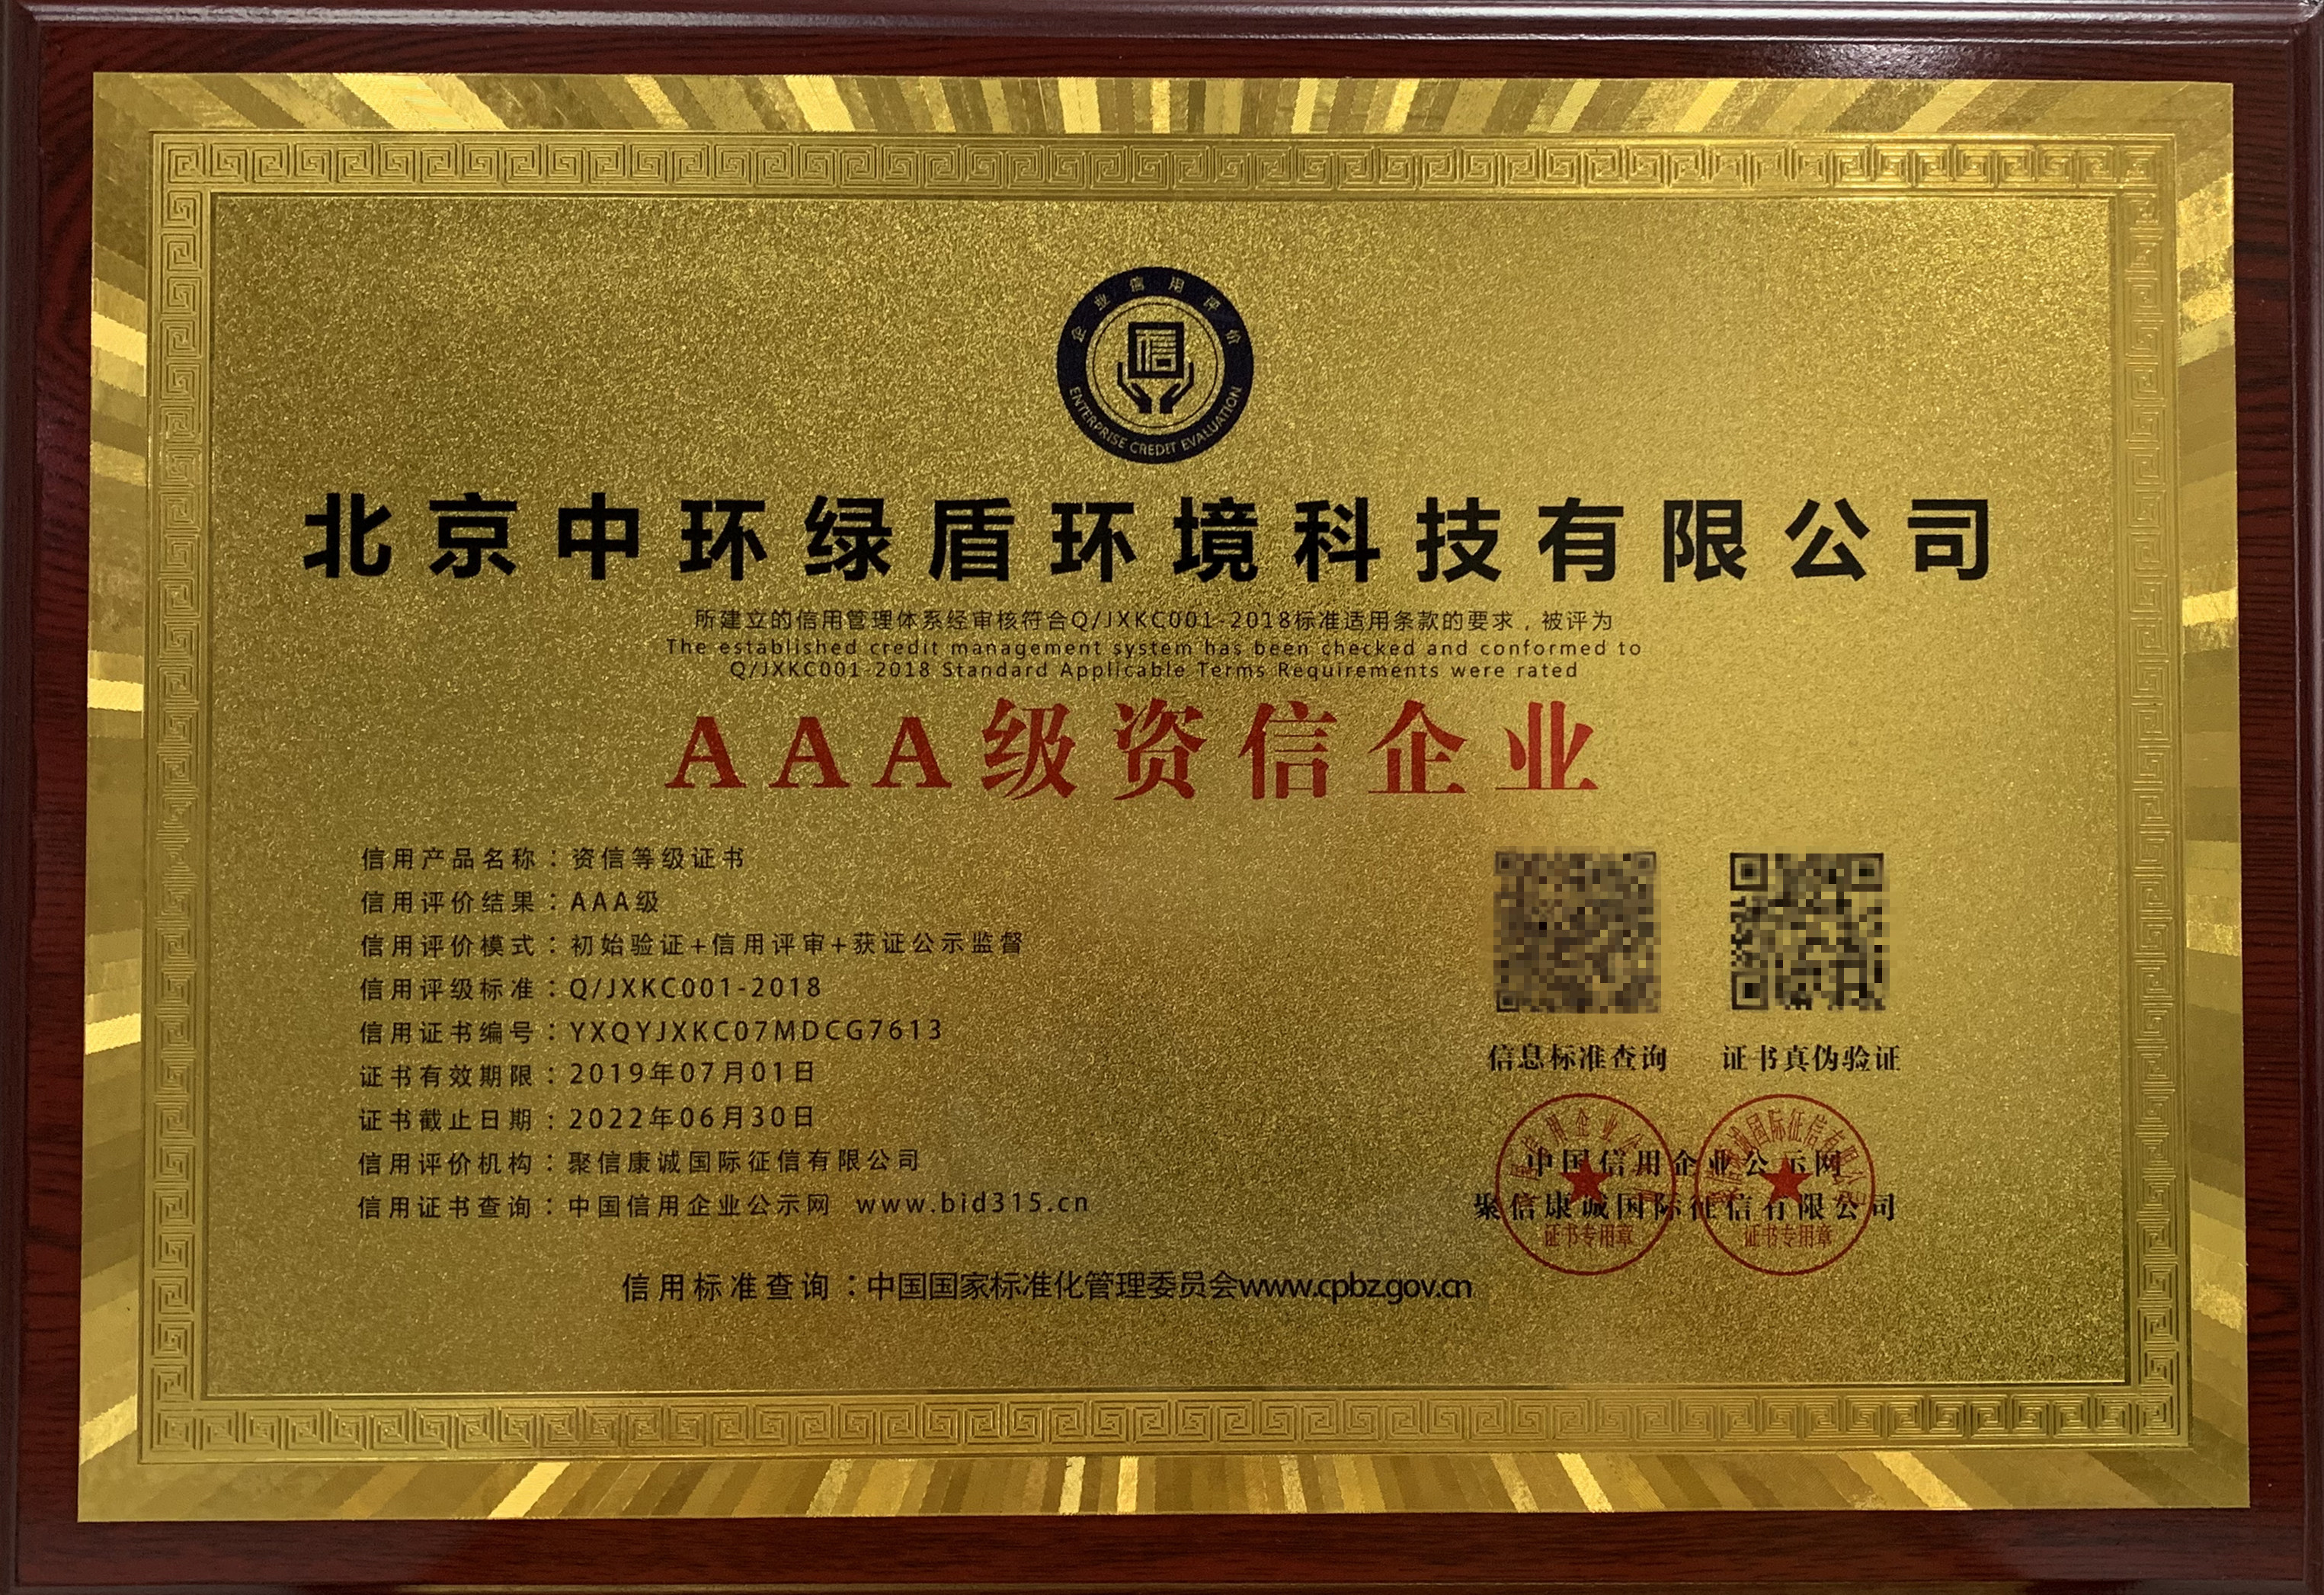 快讯 北京中环绿盾通过国家资信评估机构AAA资信等级认证